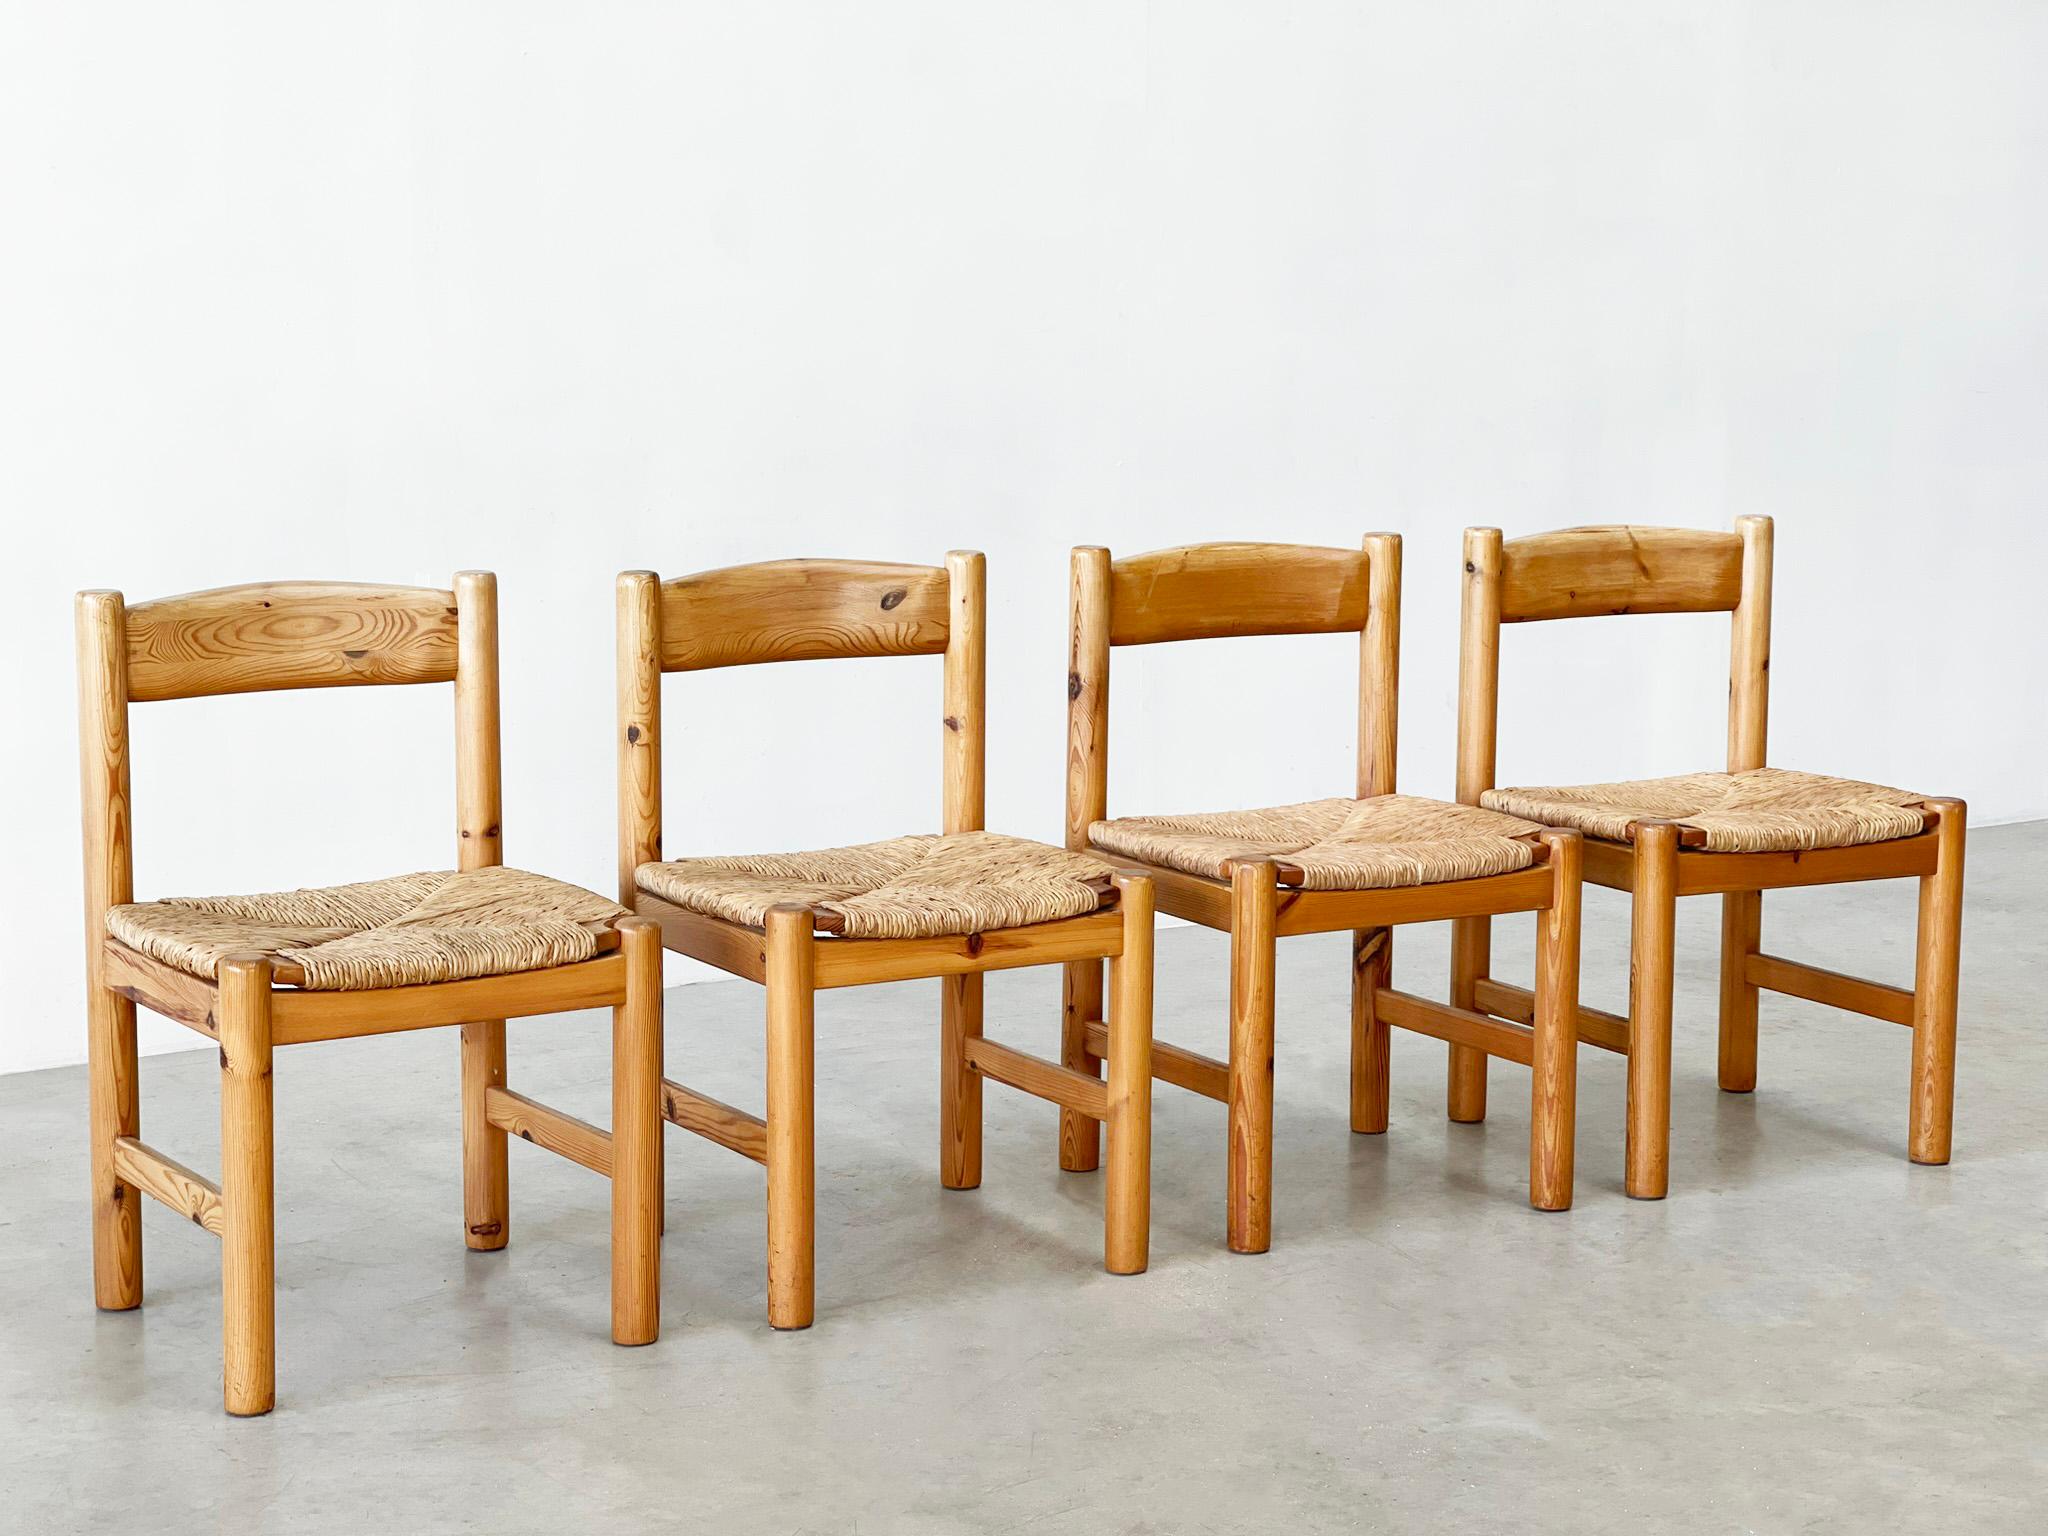 Elegante Esszimmerstühle aus Kiefer und Rattan
Was für ein schönes Set von Esszimmerstühlen. Es handelt sich um Esszimmerstühle, die wahrscheinlich in den 1960er Jahren in Frankreich hergestellt wurden. Sie weisen deutliche Einflüsse der